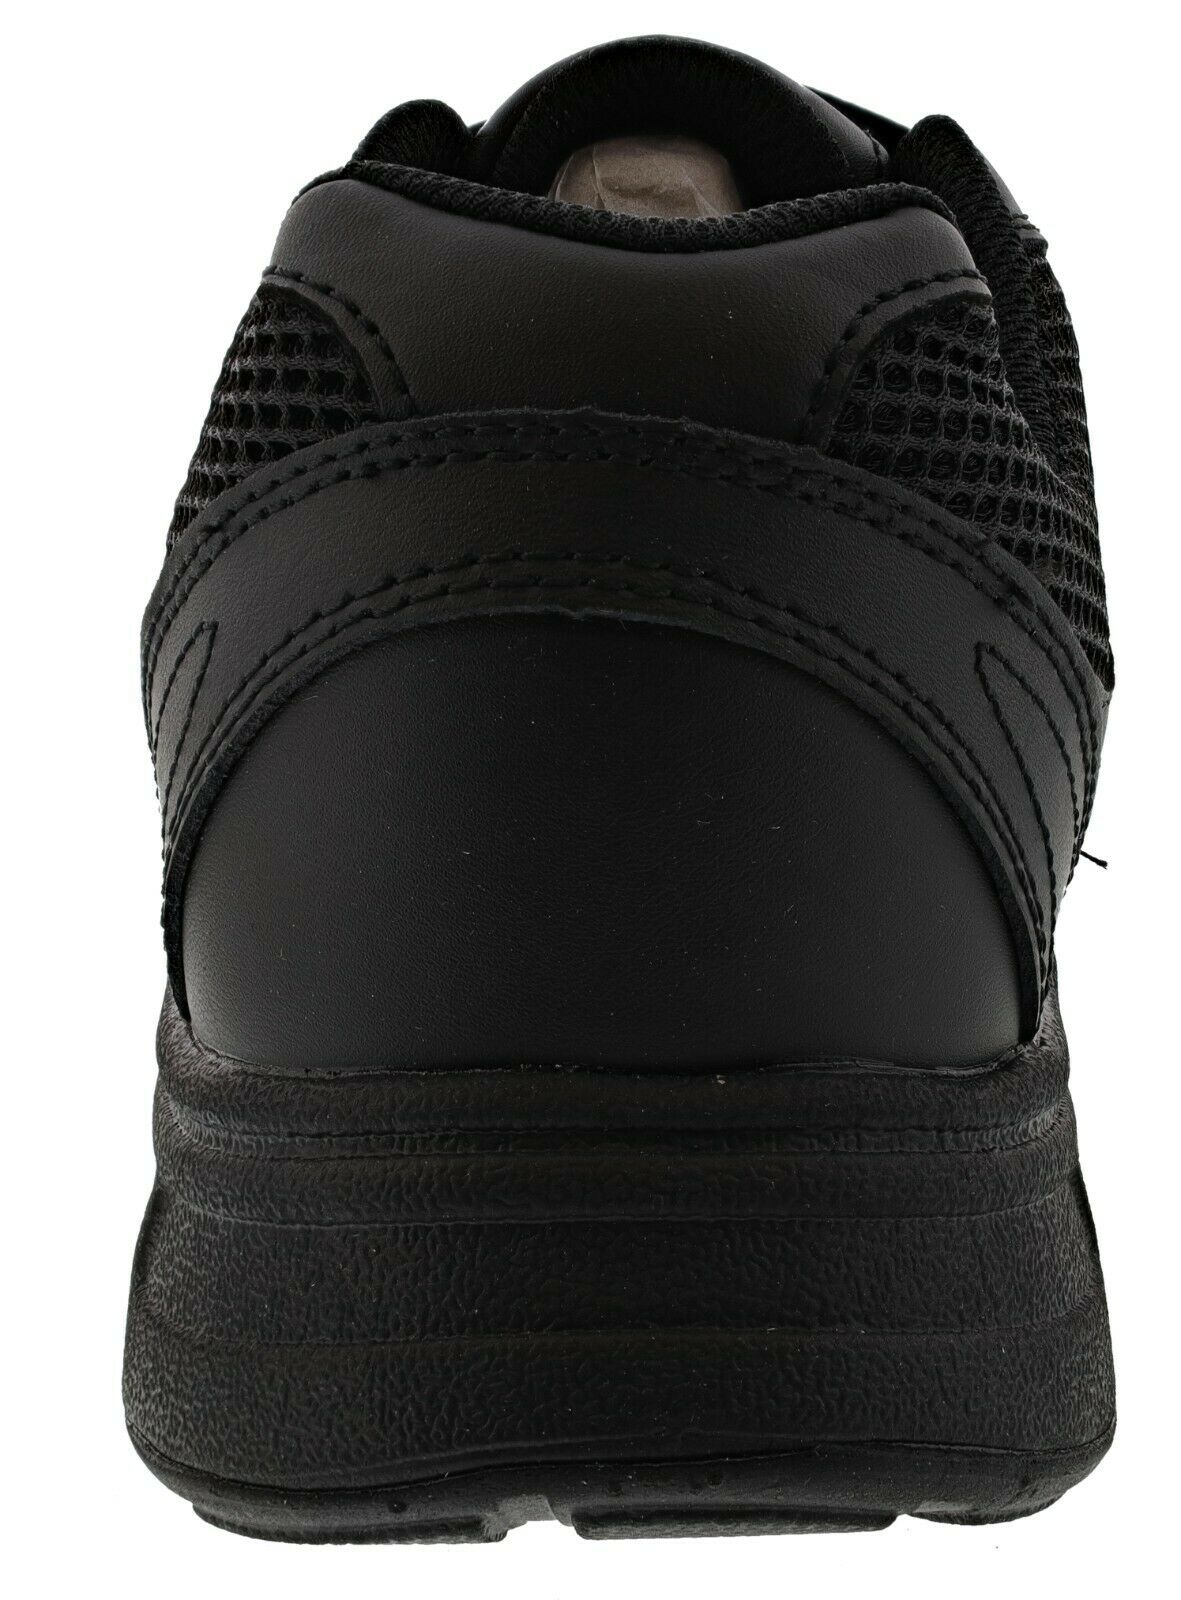 Dr. Scholl's Men's Brisk Sneakers, Wide Width - image 4 of 6